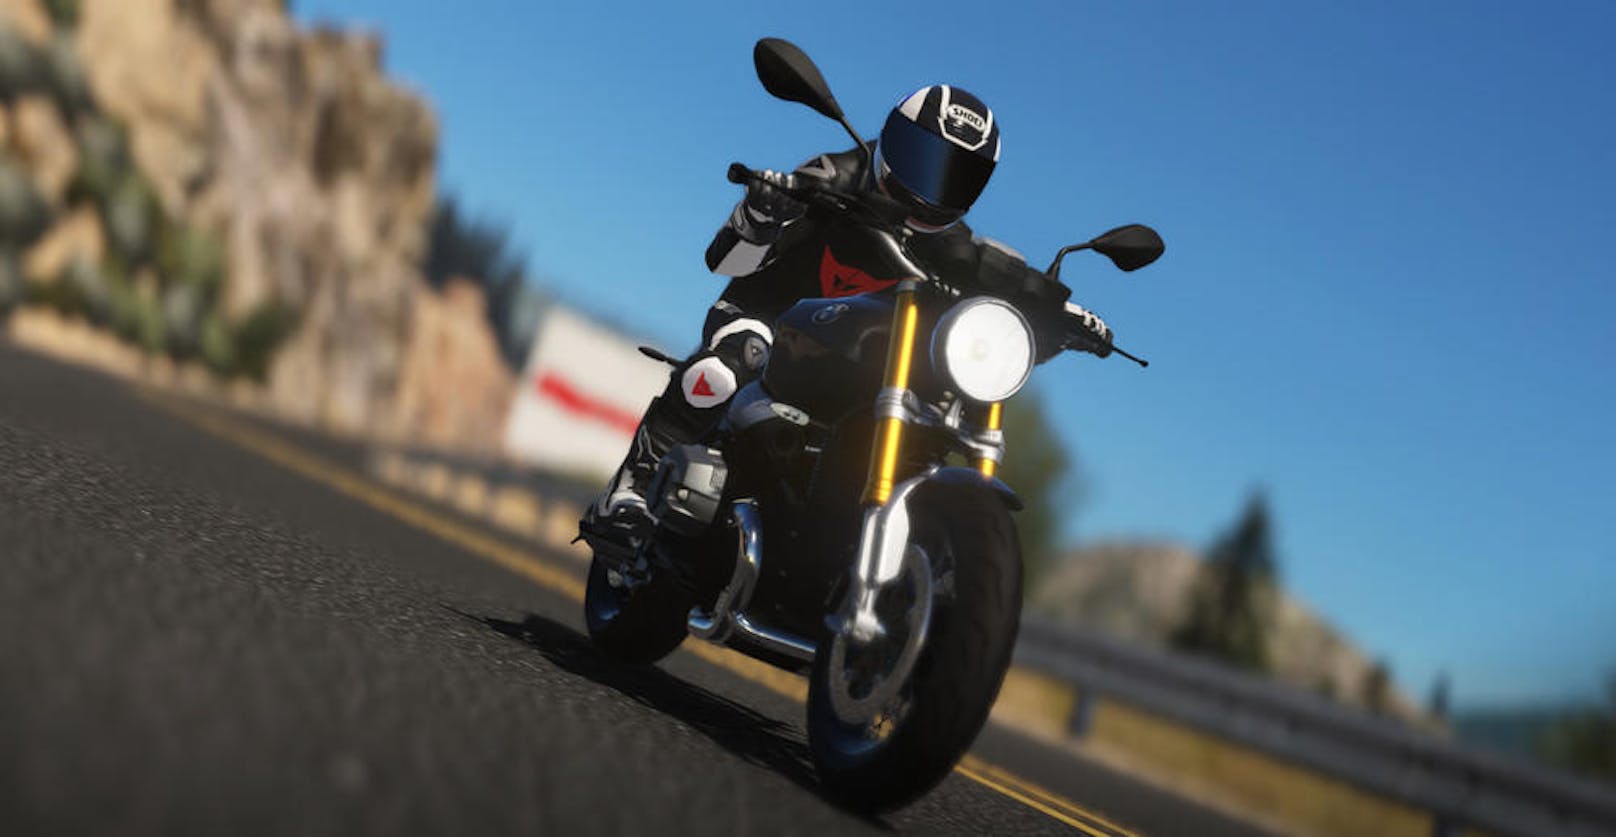 Es wird nicht auf eine spezielle Klasse fokussiert, sondern dem Spieler eine breite Palette an Motorrad-Modellen und dementsprechend viele Anpassungsmöglichkeiten geboten.